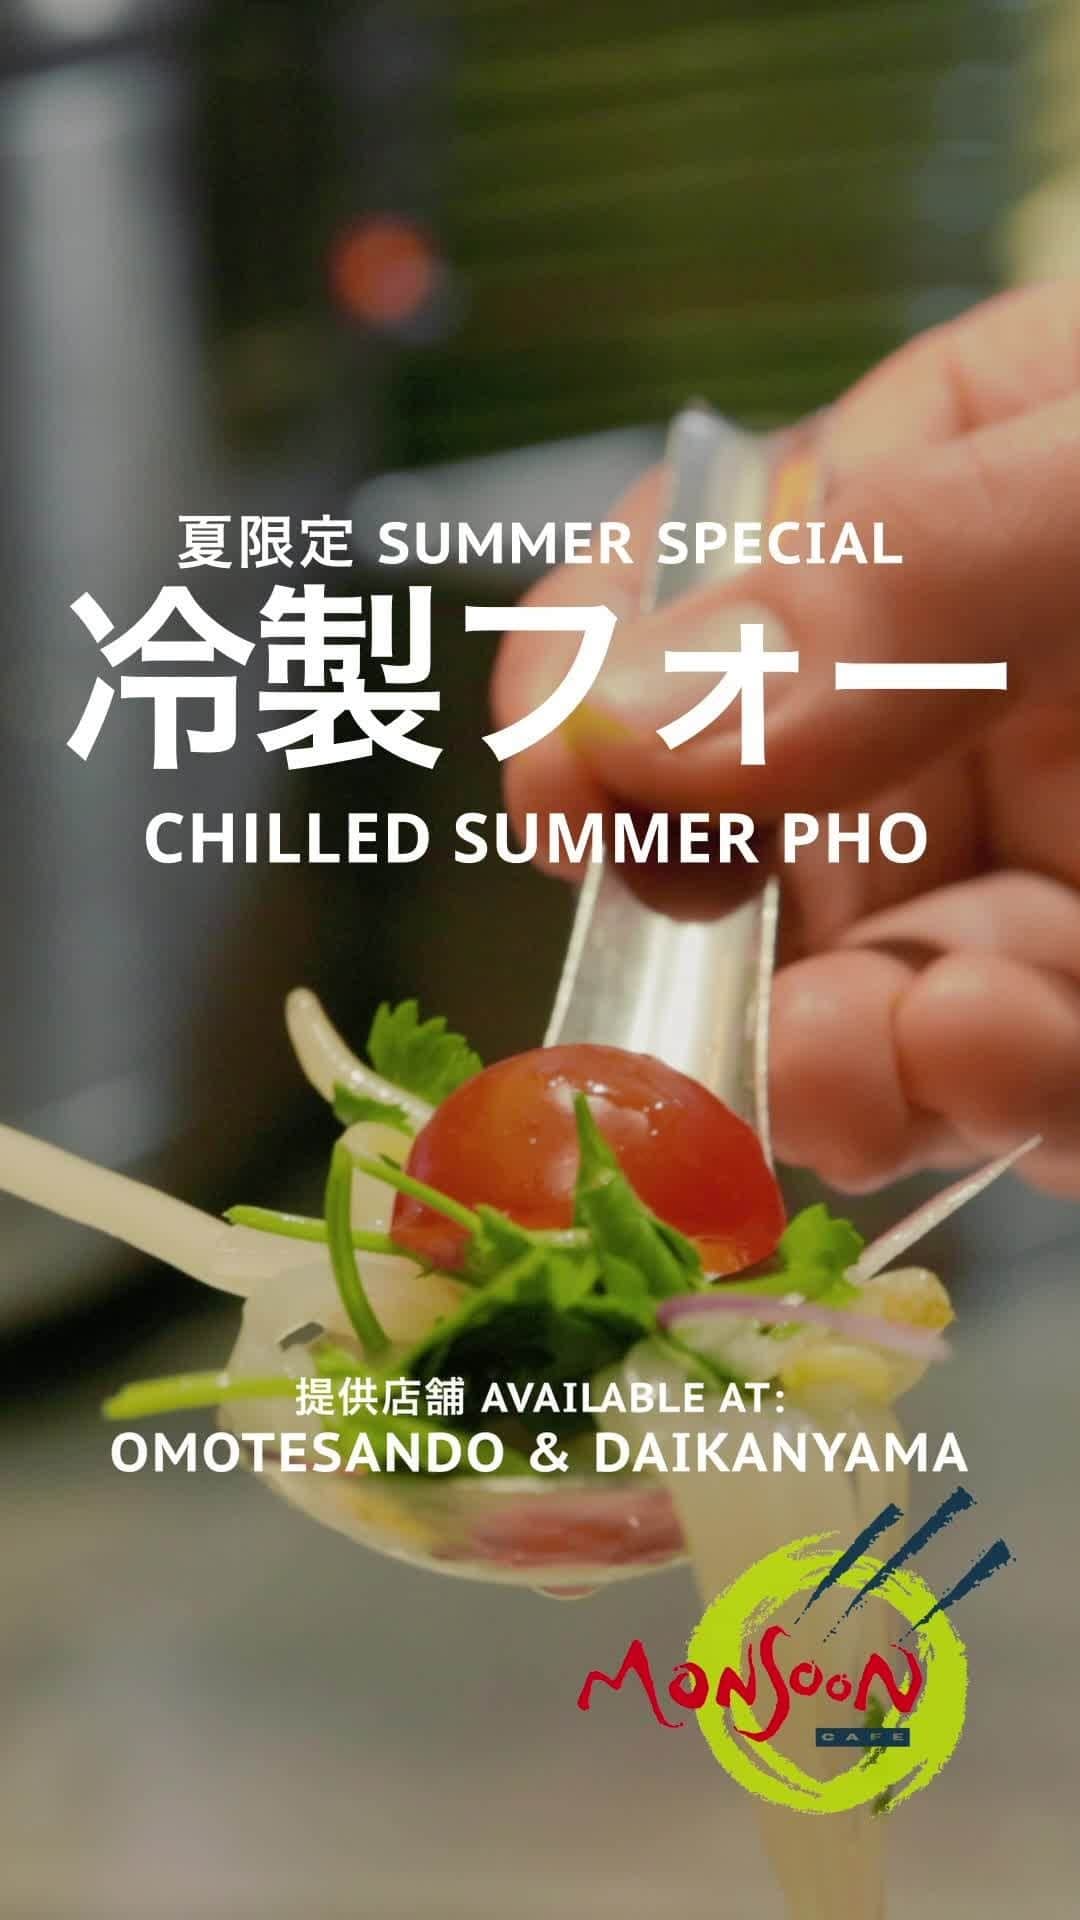 モンスーンカフェのインスタグラム：「Monsoon Cafe Chilled Pho is back! 🍜⁠ モンスーンカフェのひんやり冷製フォーで猛暑を乗り切りましょう！⁠ 【夏限定】エスニックで涼感を！冷製フォー4種　7/10（月）～提供開始⁠ モンスーンカフェで毎年大好評の「夏季限定　冷製フォー」で夏バテ撃退、パワーチャージを。⁠ ⁠ ■提供店舗⁠ モンスーンカフェ代官山 (@monsooncafe_daikanyama)⁠ モンスーンカフェ表参道 (@monsooncafe_omotesando)⁠ ⁠ ■提供期間⁠ 7月10日（月）～9月8日（金）⁠ ⁠ ■提供期間⁠ 担々フォー　　　　　　　７月10日～14日　8月７日～10日⁠ トムヤムフォー　　　　　７月18日～21日　8月21日～25日⁠ 炙りチャーシューフォー　７月24日～28日　8月28日～9月1日⁠ ローストビーフフォー　　７月31日～8月4日　9月4日～8日⁠ ⁠ ※お盆期間8月11日〜8月20日は提供しておりません。⁠ ※仕入れ状況により、予告なく終了となることもございます。⁠」